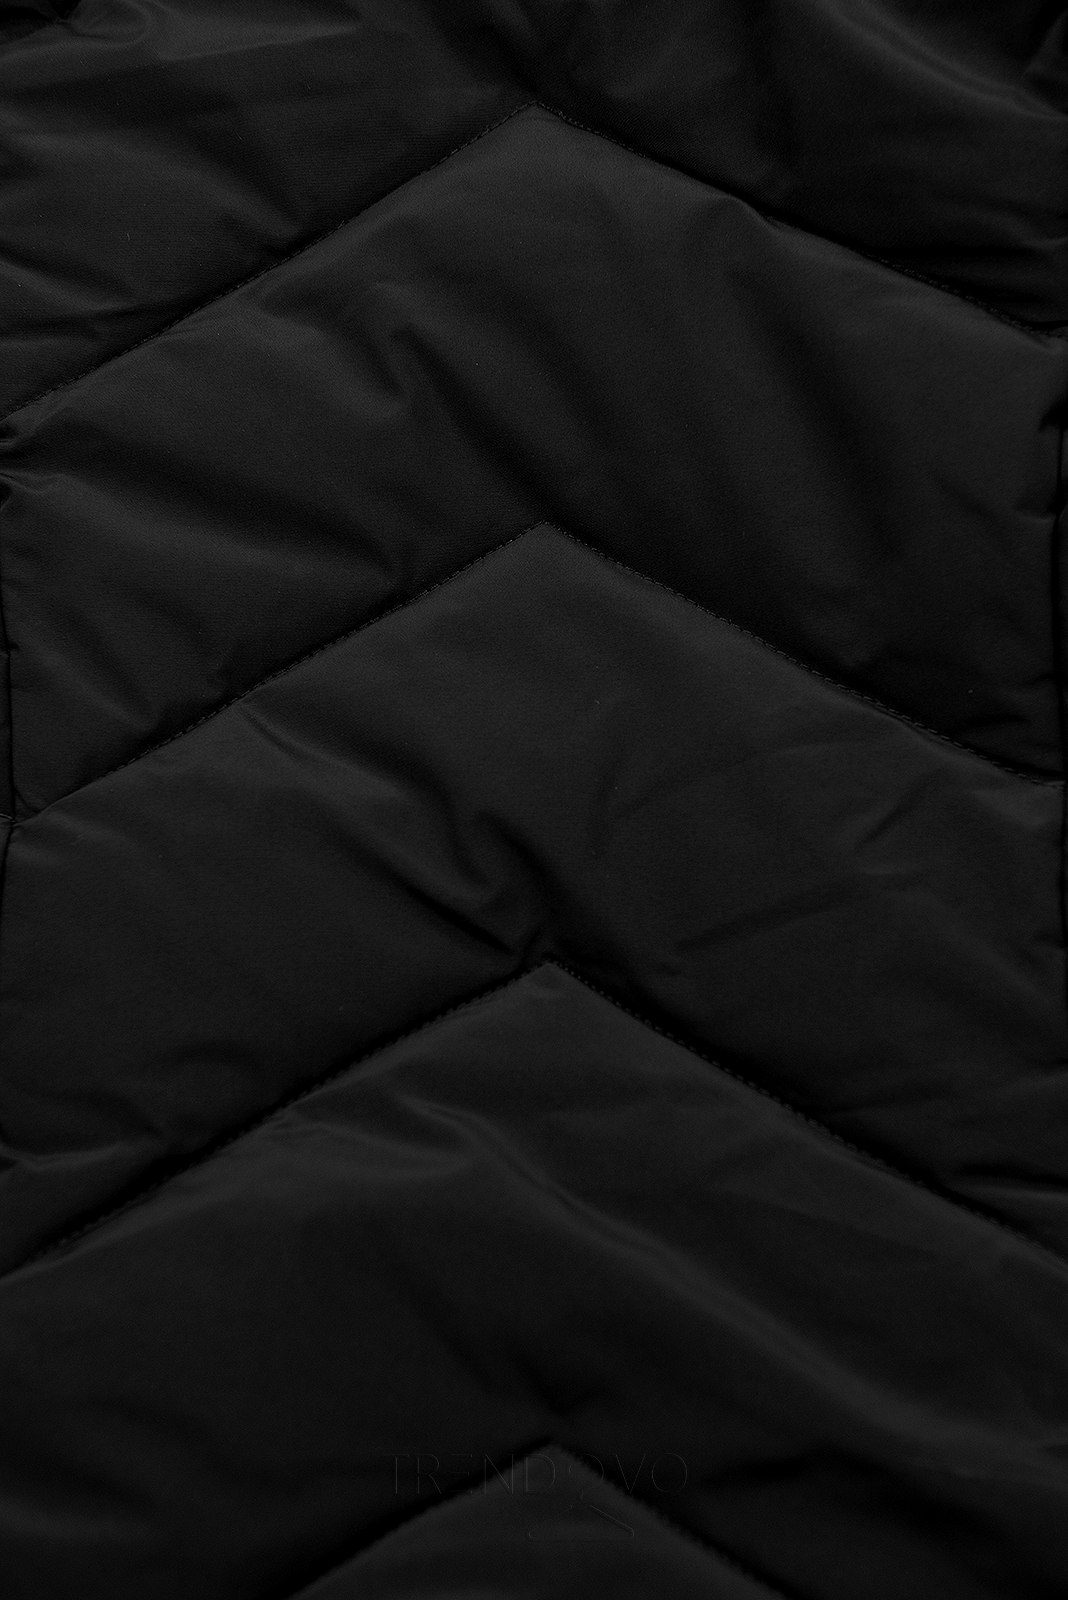 Černá prošívaná zimní bunda s odnímatelnou kapucí